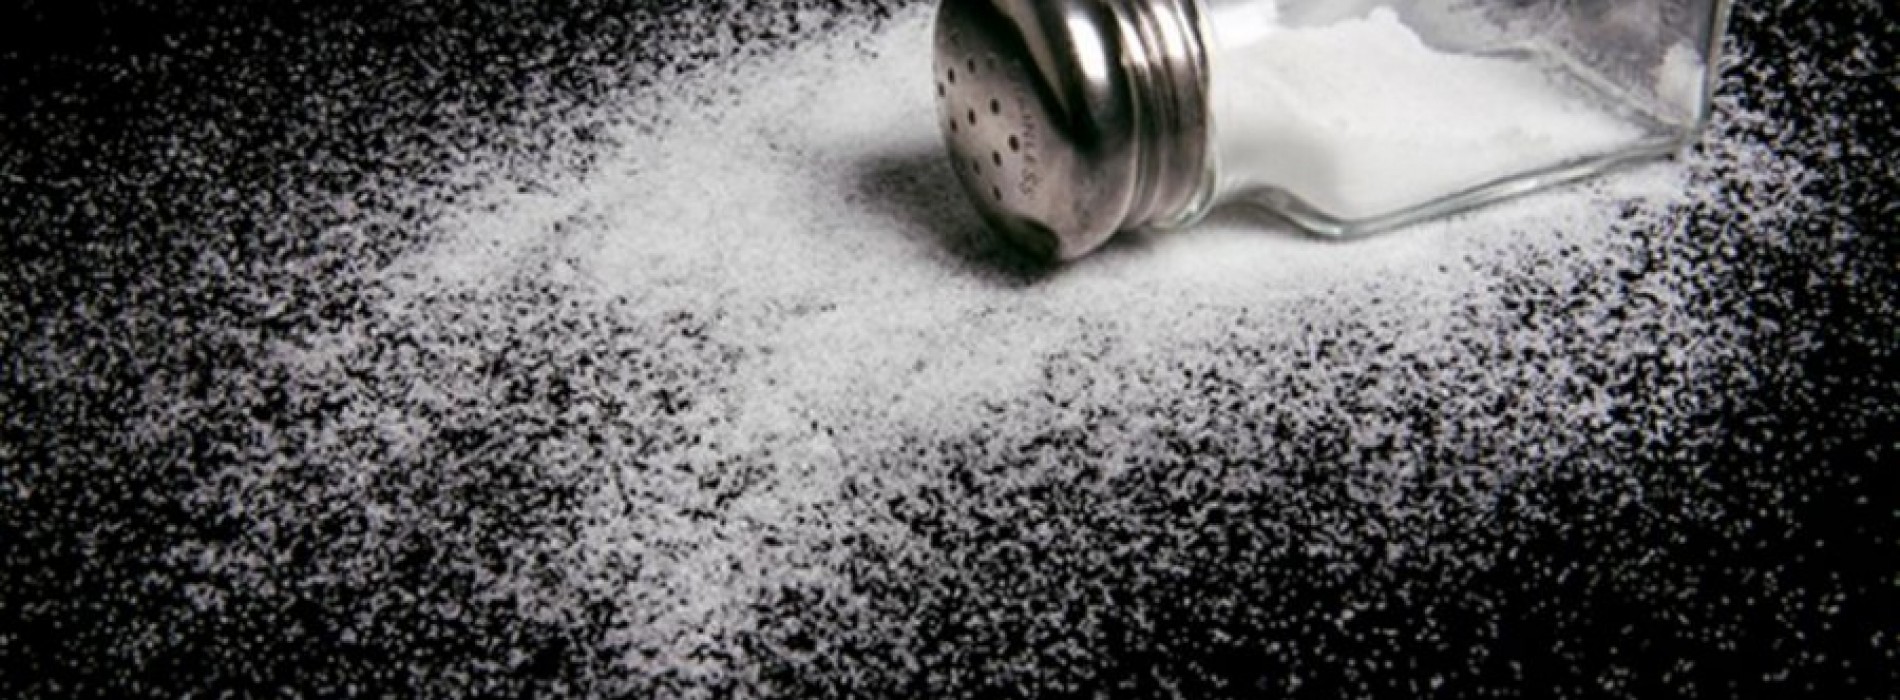 Deze 5 ‘gezonde’ producten bevatten meer zout dan een zak chips, shocking!